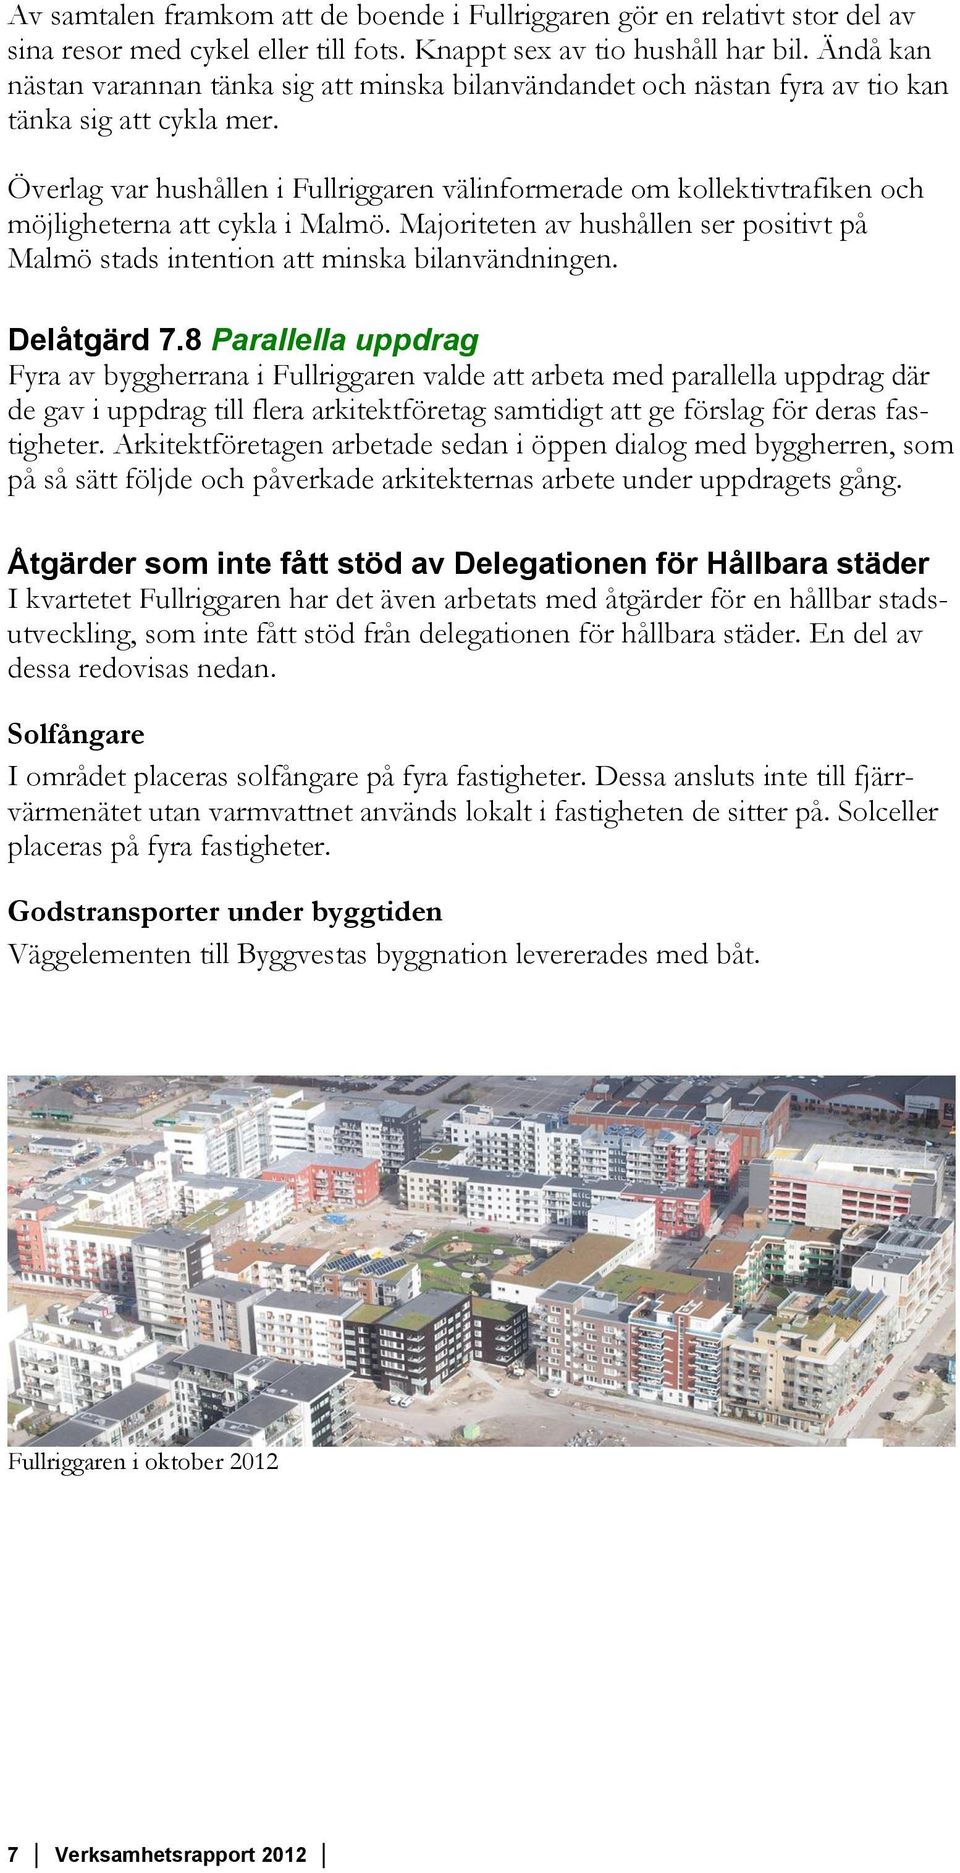 Överlag var hushållen i Fullriggaren välinformerade om kollektivtrafiken och möjligheterna att cykla i Malmö. Majoriteten av hushållen ser positivt på Malmö stads intention att minska bilanvändningen.